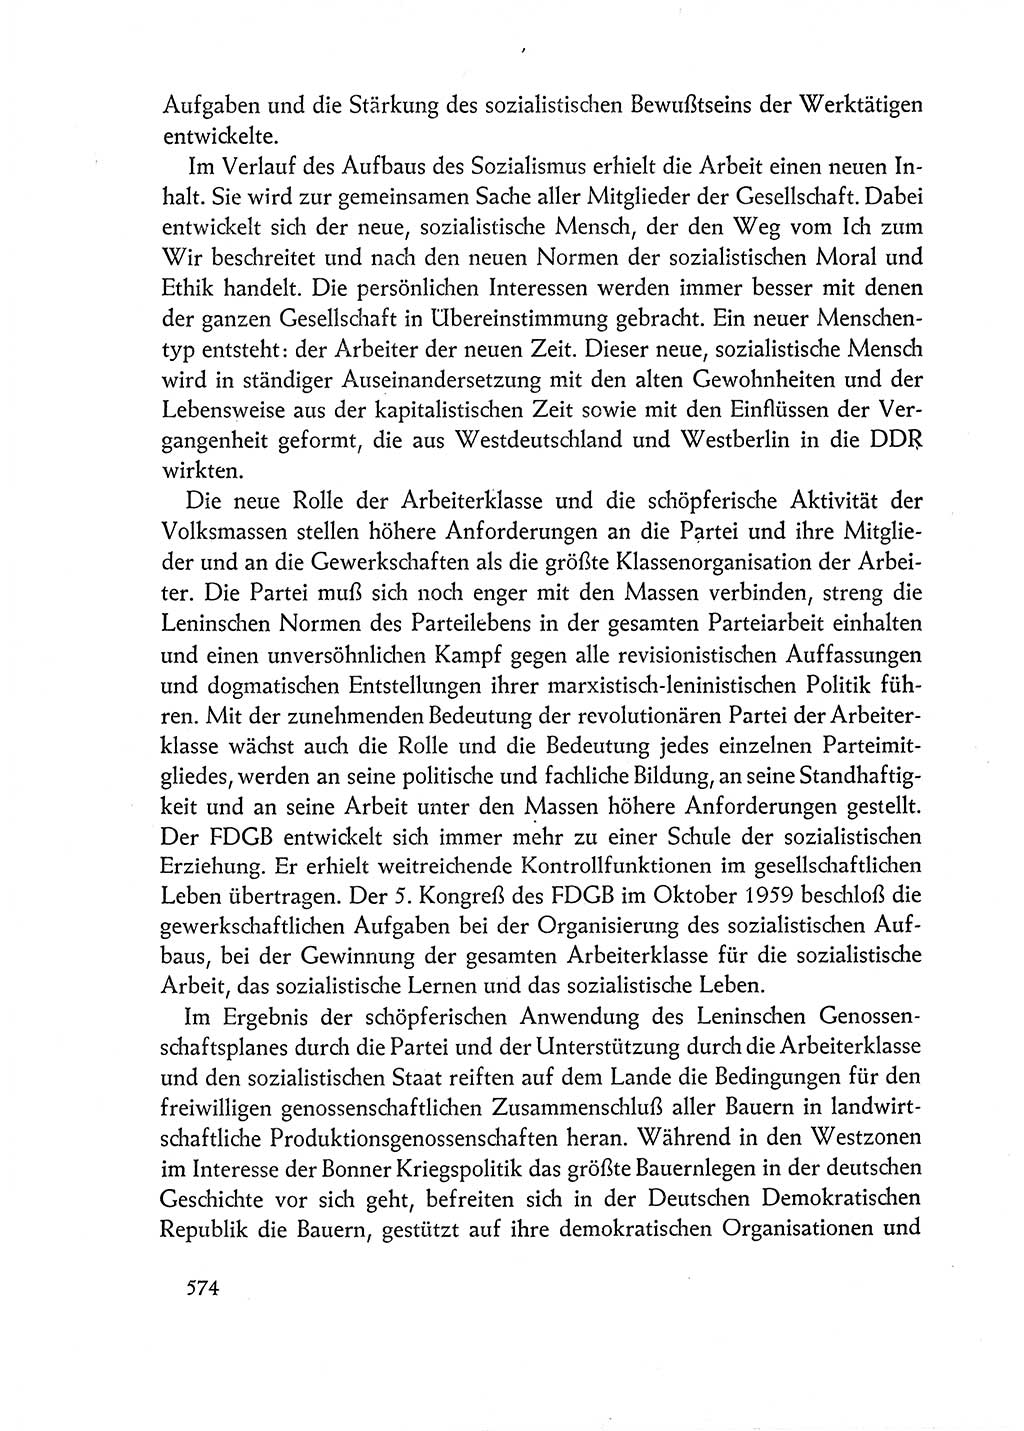 Dokumente der Sozialistischen Einheitspartei Deutschlands (SED) [Deutsche Demokratische Republik (DDR)] 1962-1963, Seite 574 (Dok. SED DDR 1962-1963, S. 574)